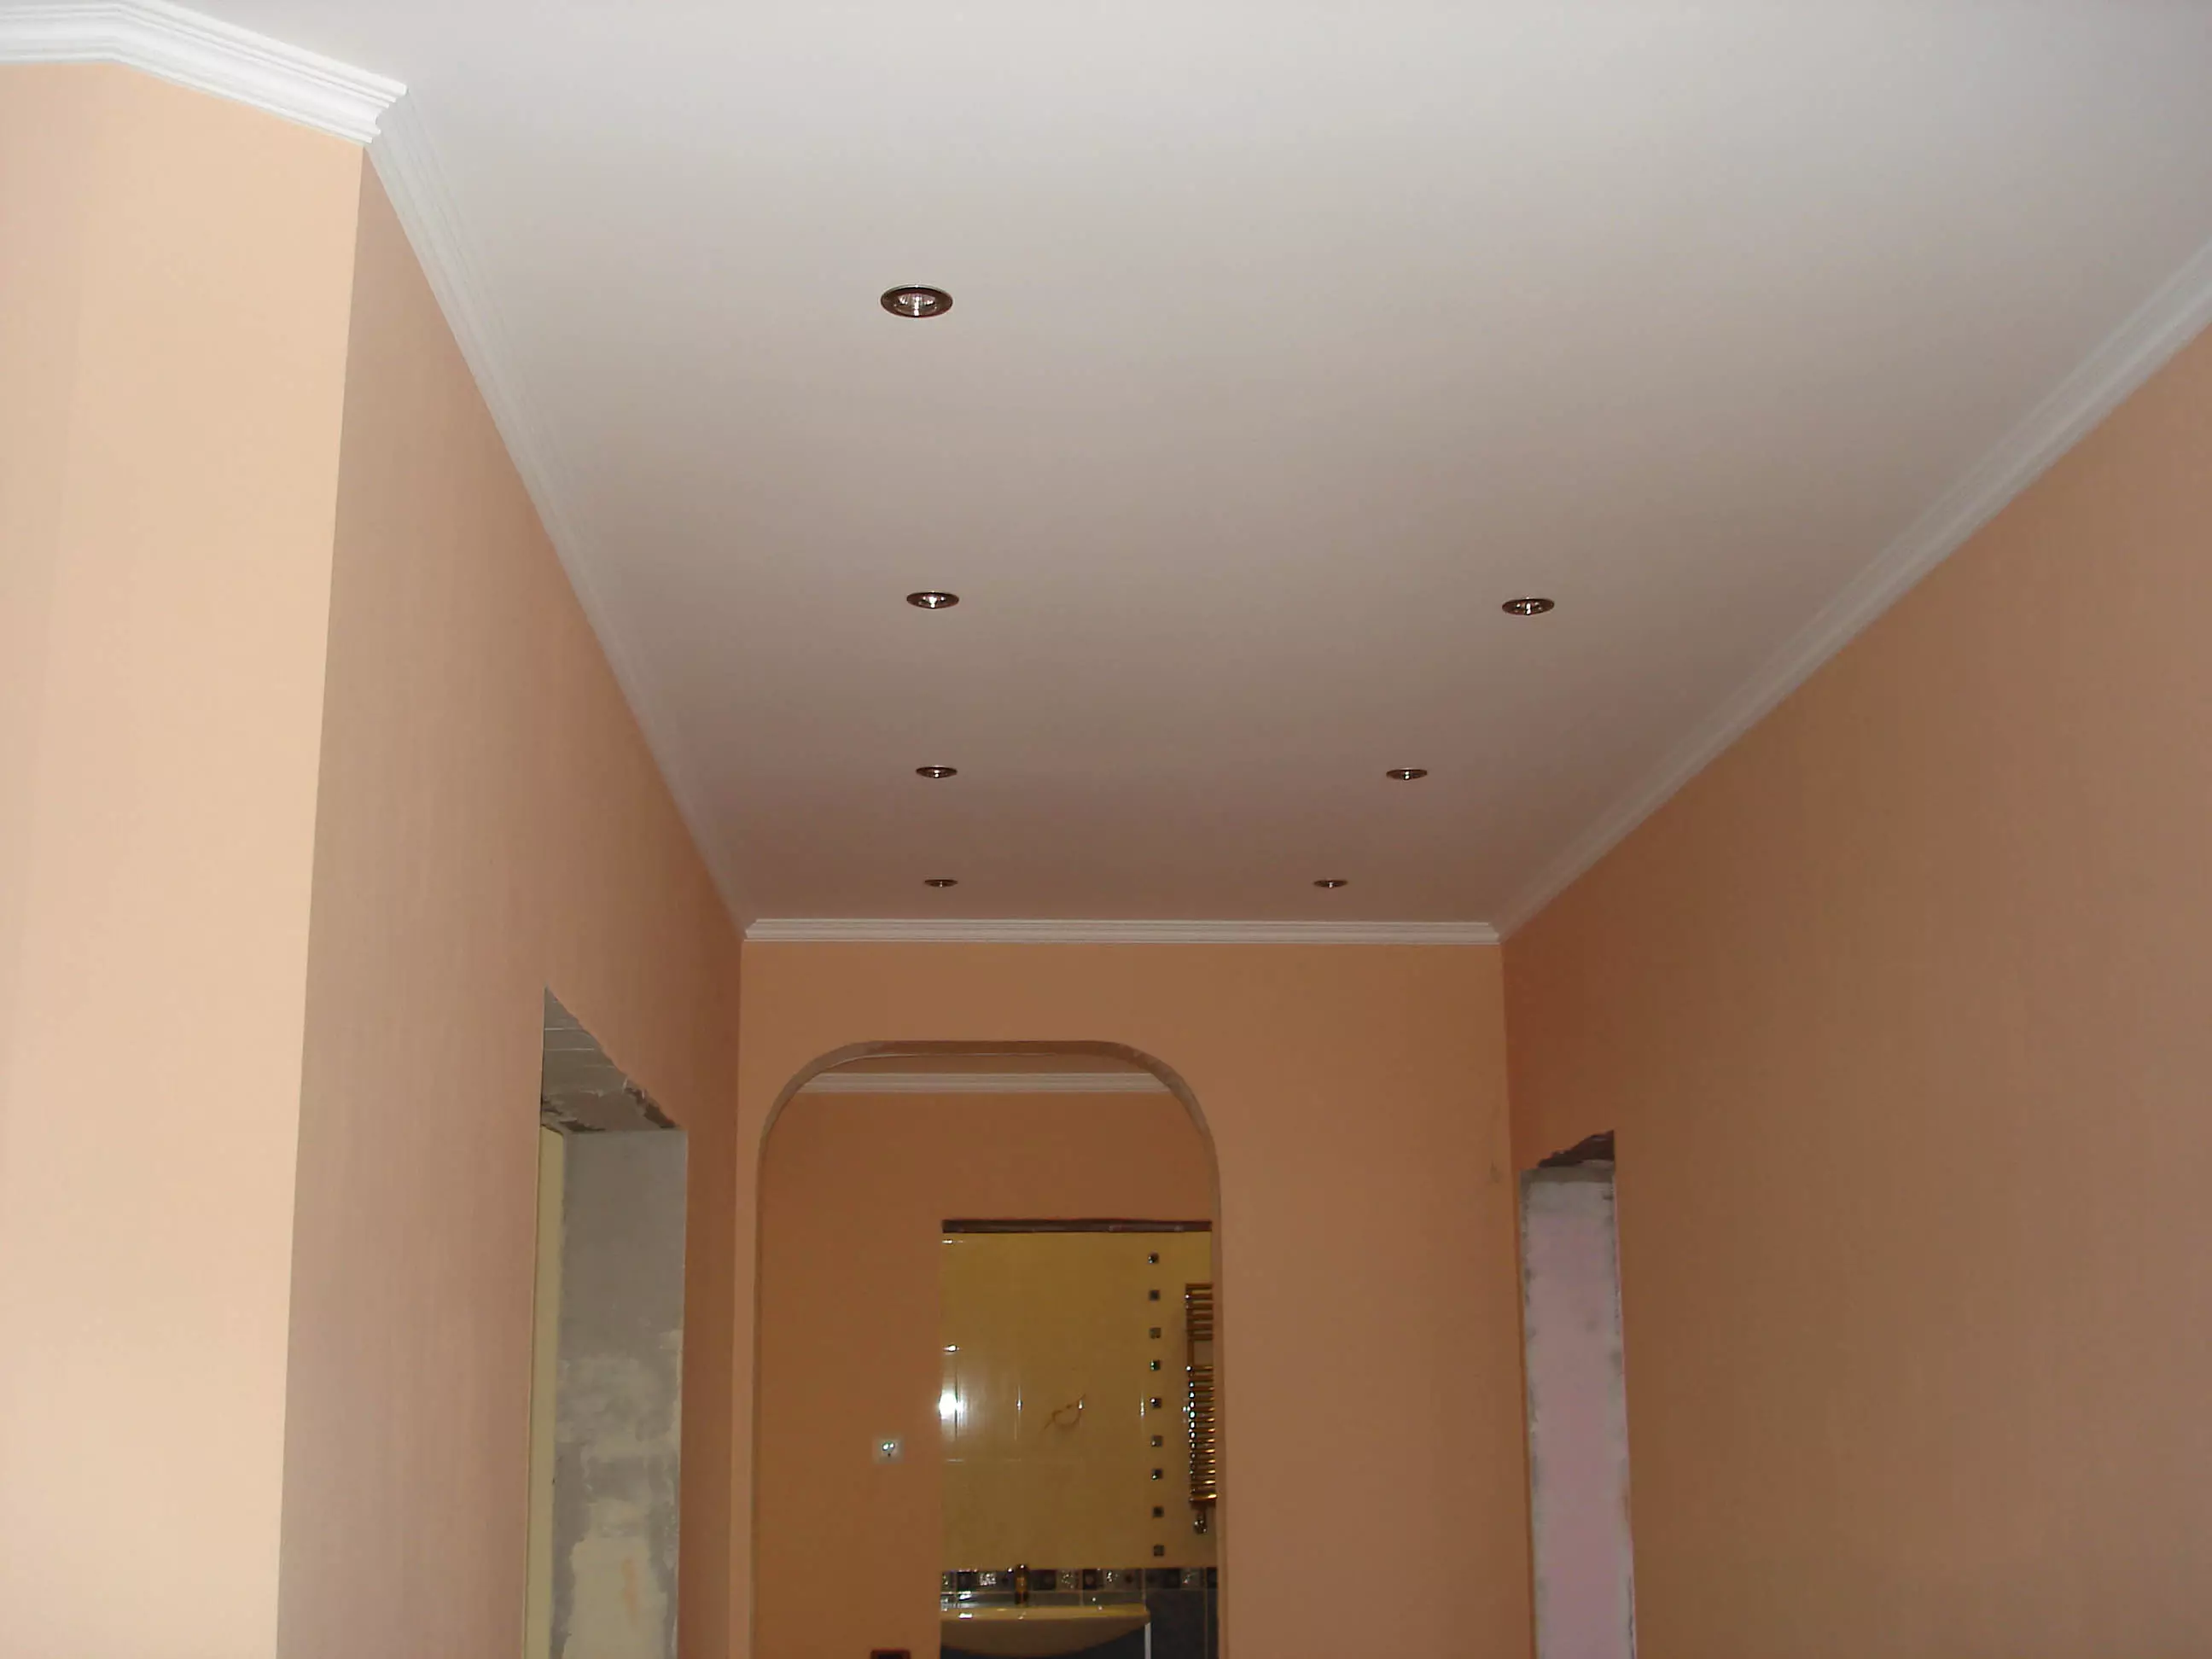 Stretch sufit w korytarzu (71 zdjęć): konstrukcja sufitowa w wąskim i długim korytarzu, opcje z światłami punktowymi i dwupoziomowym wzorami w mieszkaniu, czarno-błyszczących gatunków 9270_14